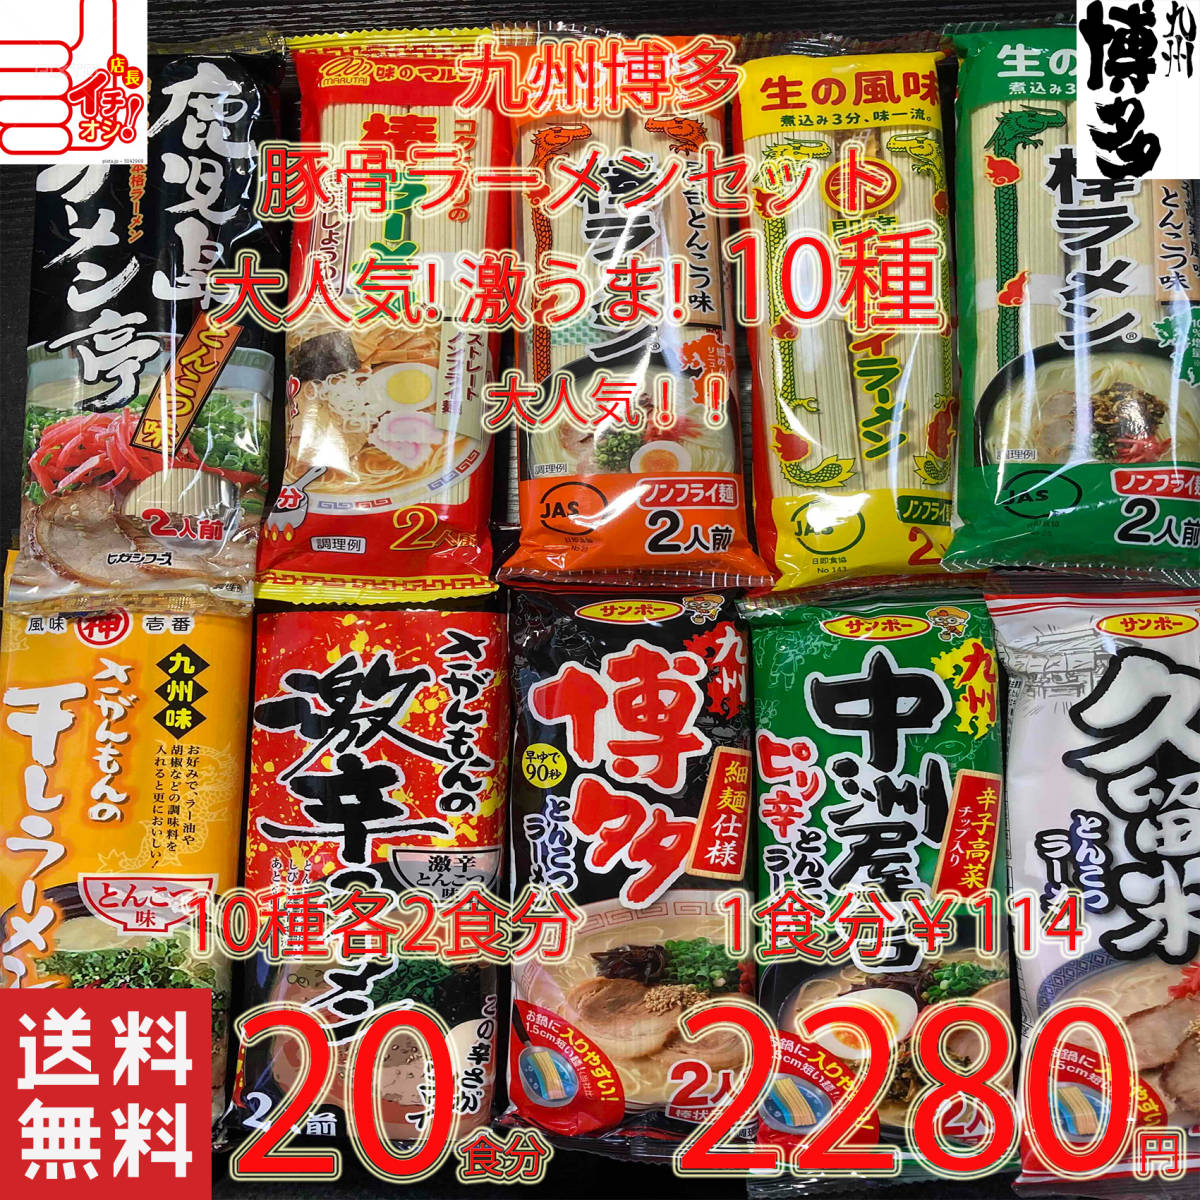  супер-скидка очень популярный ramen Kyushu Hakata свинья . ramen комплект 10 вид рекомендация комплект бесплатная доставка по всей стране Kyushu Hakata ramen 416